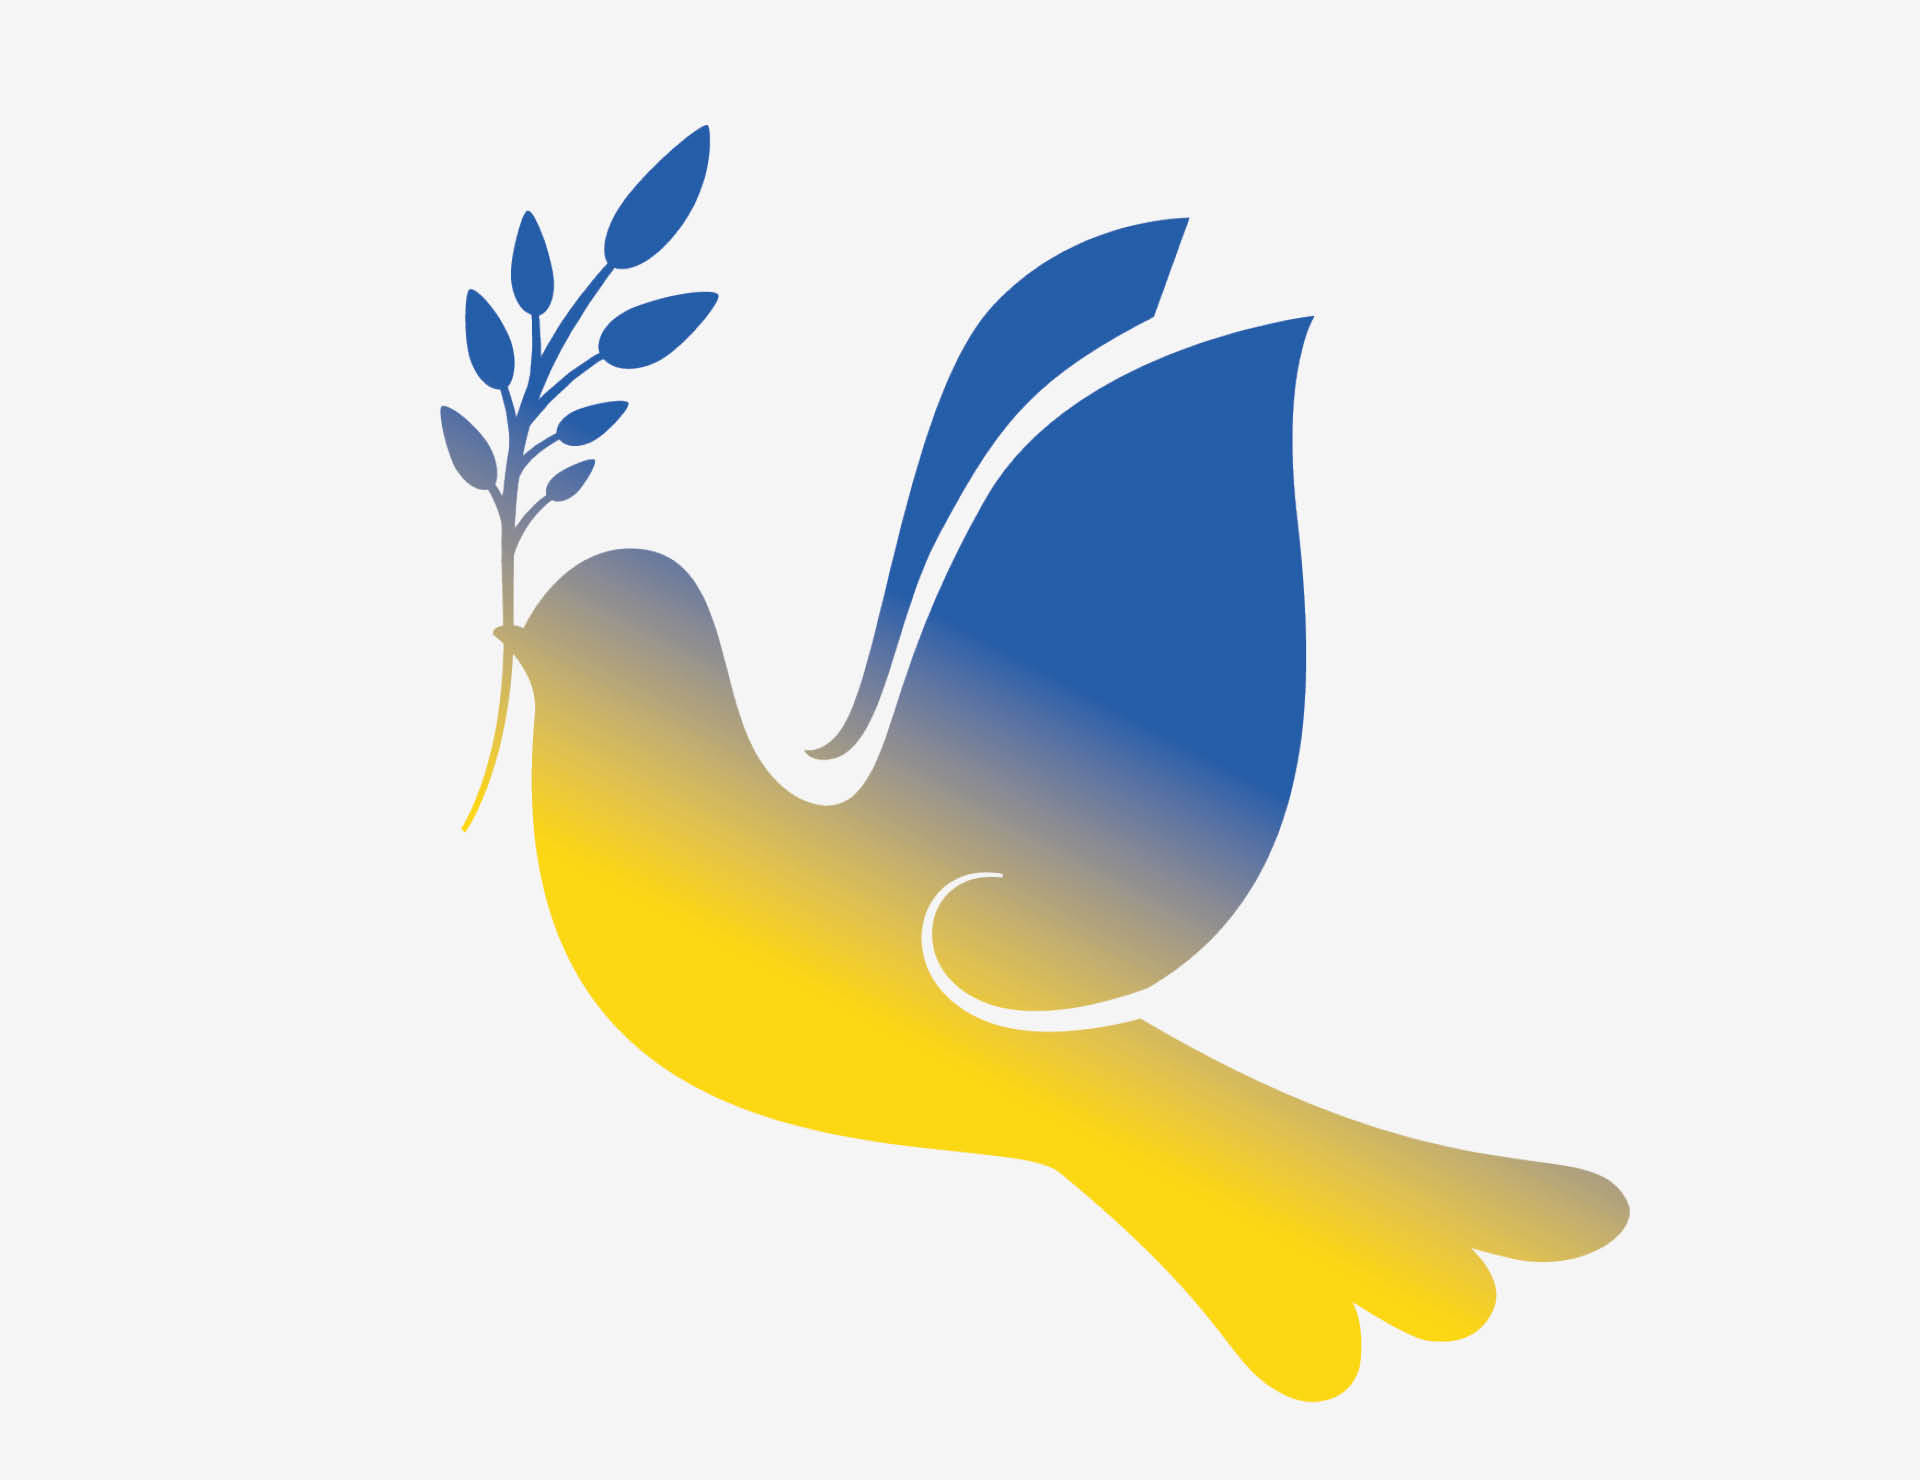 Friedenstaube in den Farben der Ukraine